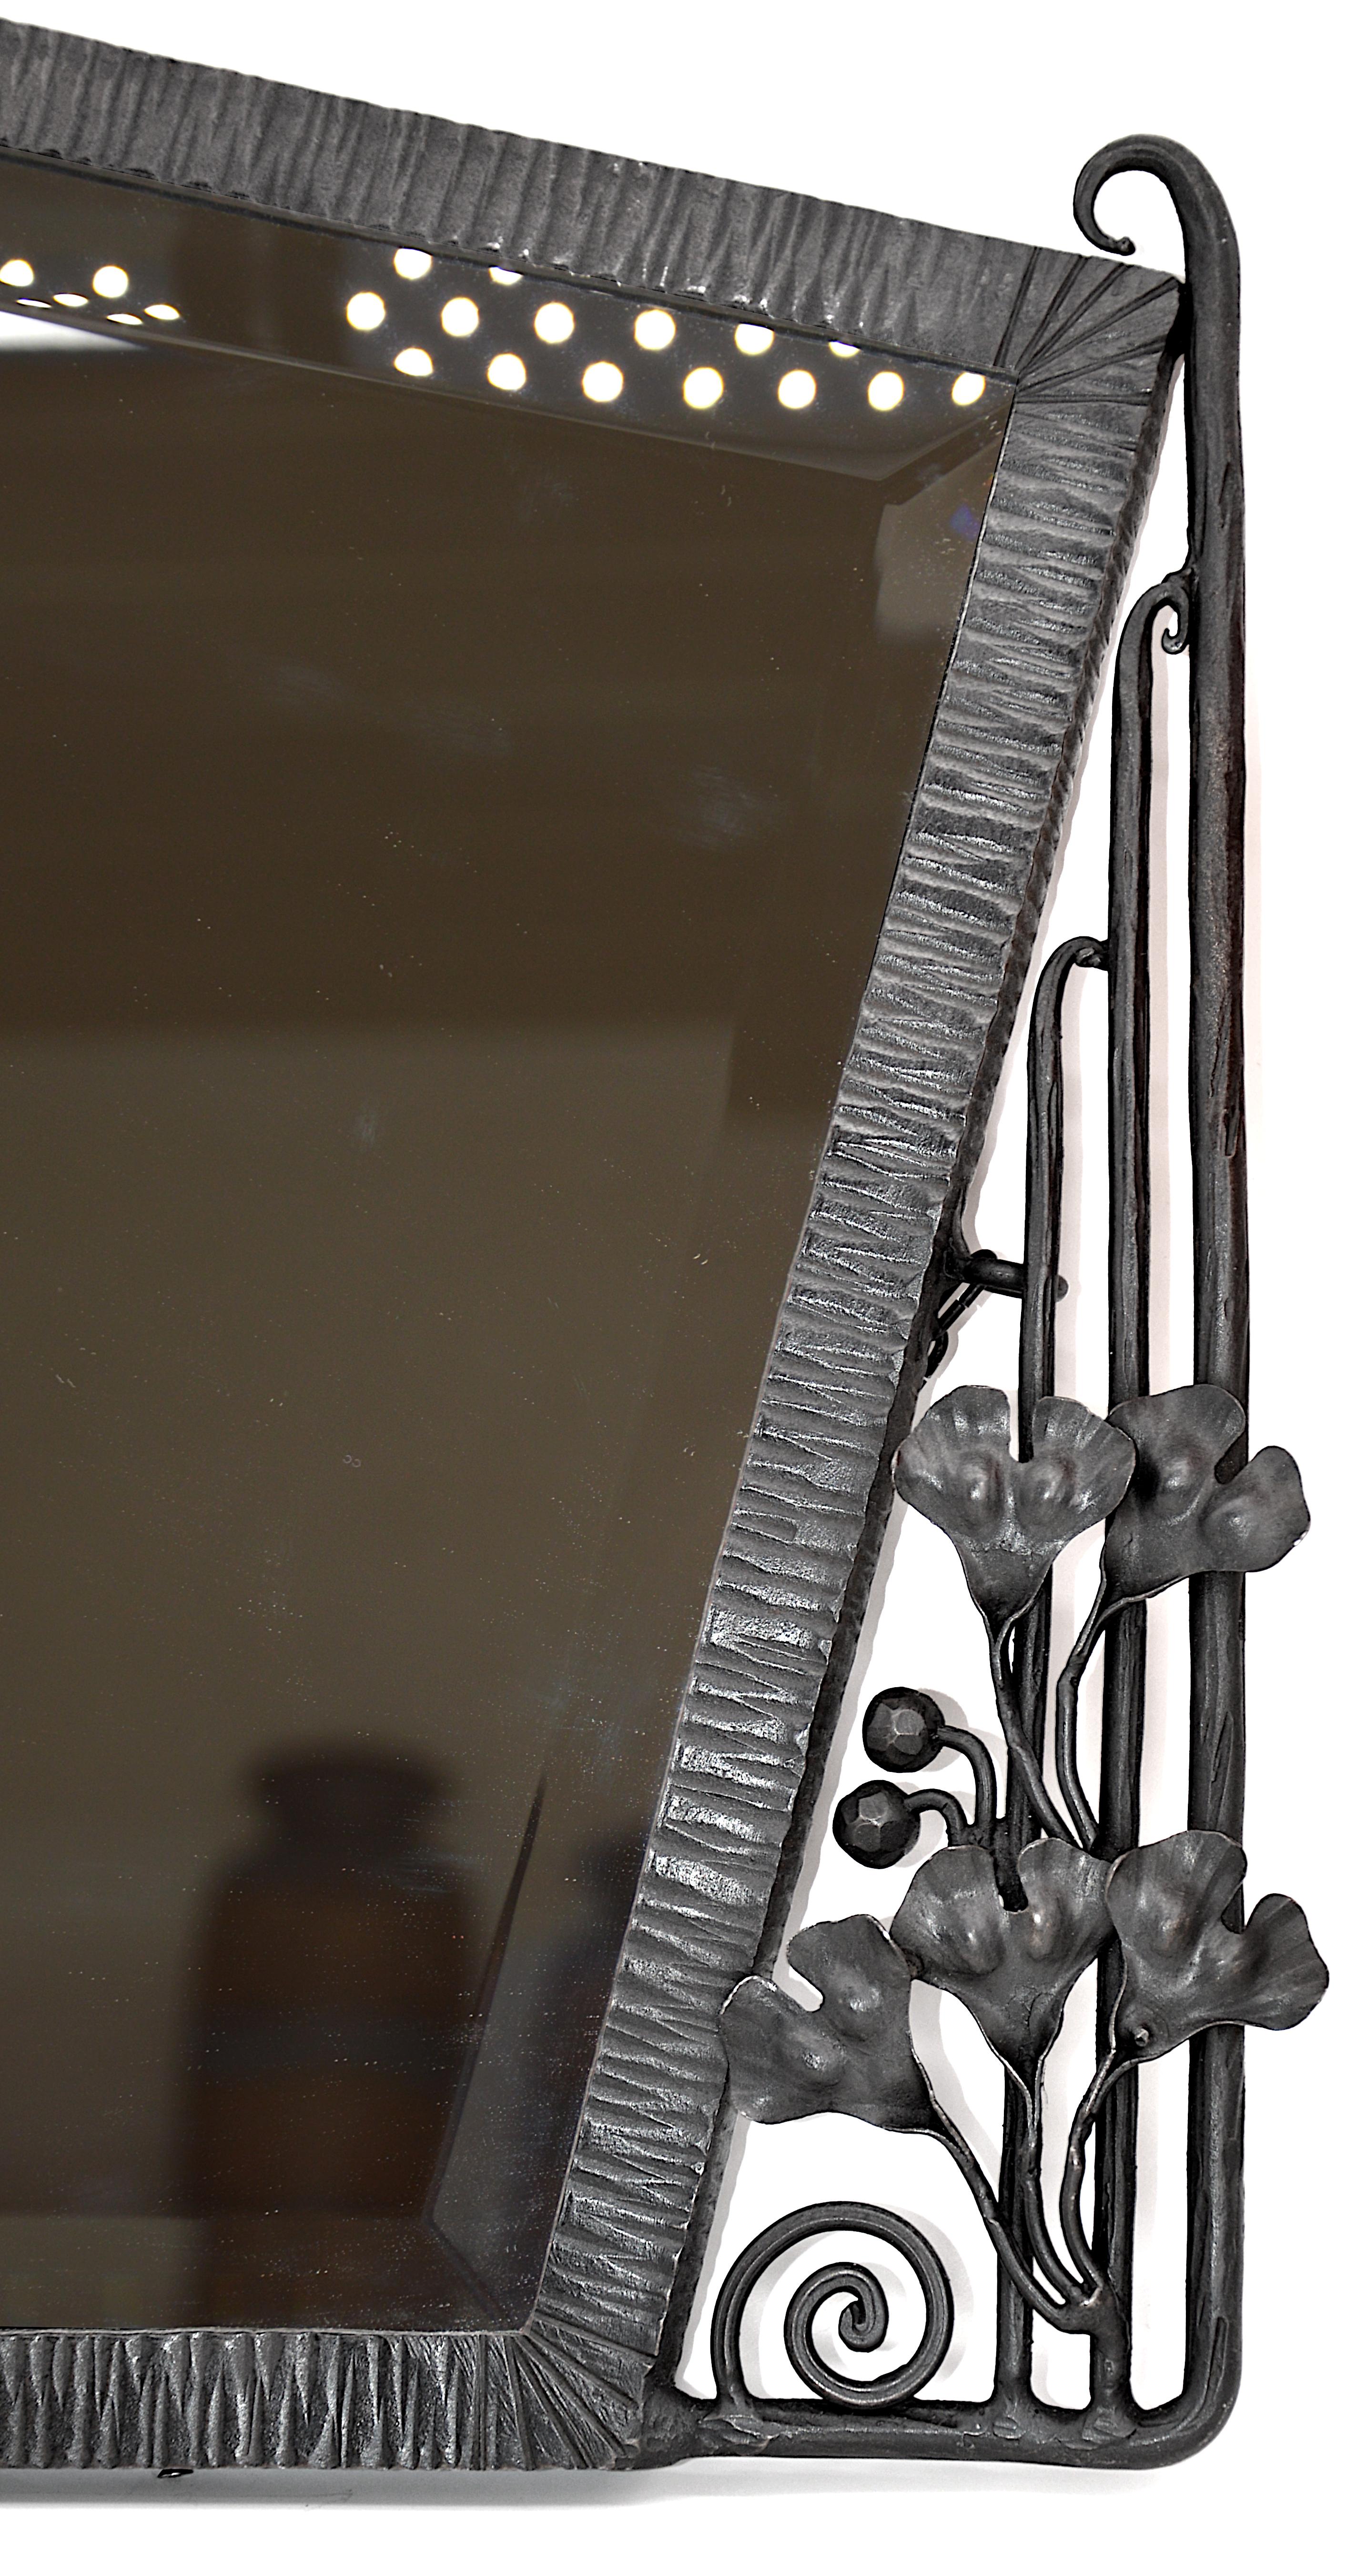 Französischer Art-Déco-Wandspiegel, Frankreich, ca. 1925. Schmiedeeisen und Spiegel. Ginkgo biloba Früchte und Blätter. Das abgenutzte und fleckige, abgeschrägte Glas wurde durch ein identisches neues Glas ersetzt. Maße: Breite: 25,8